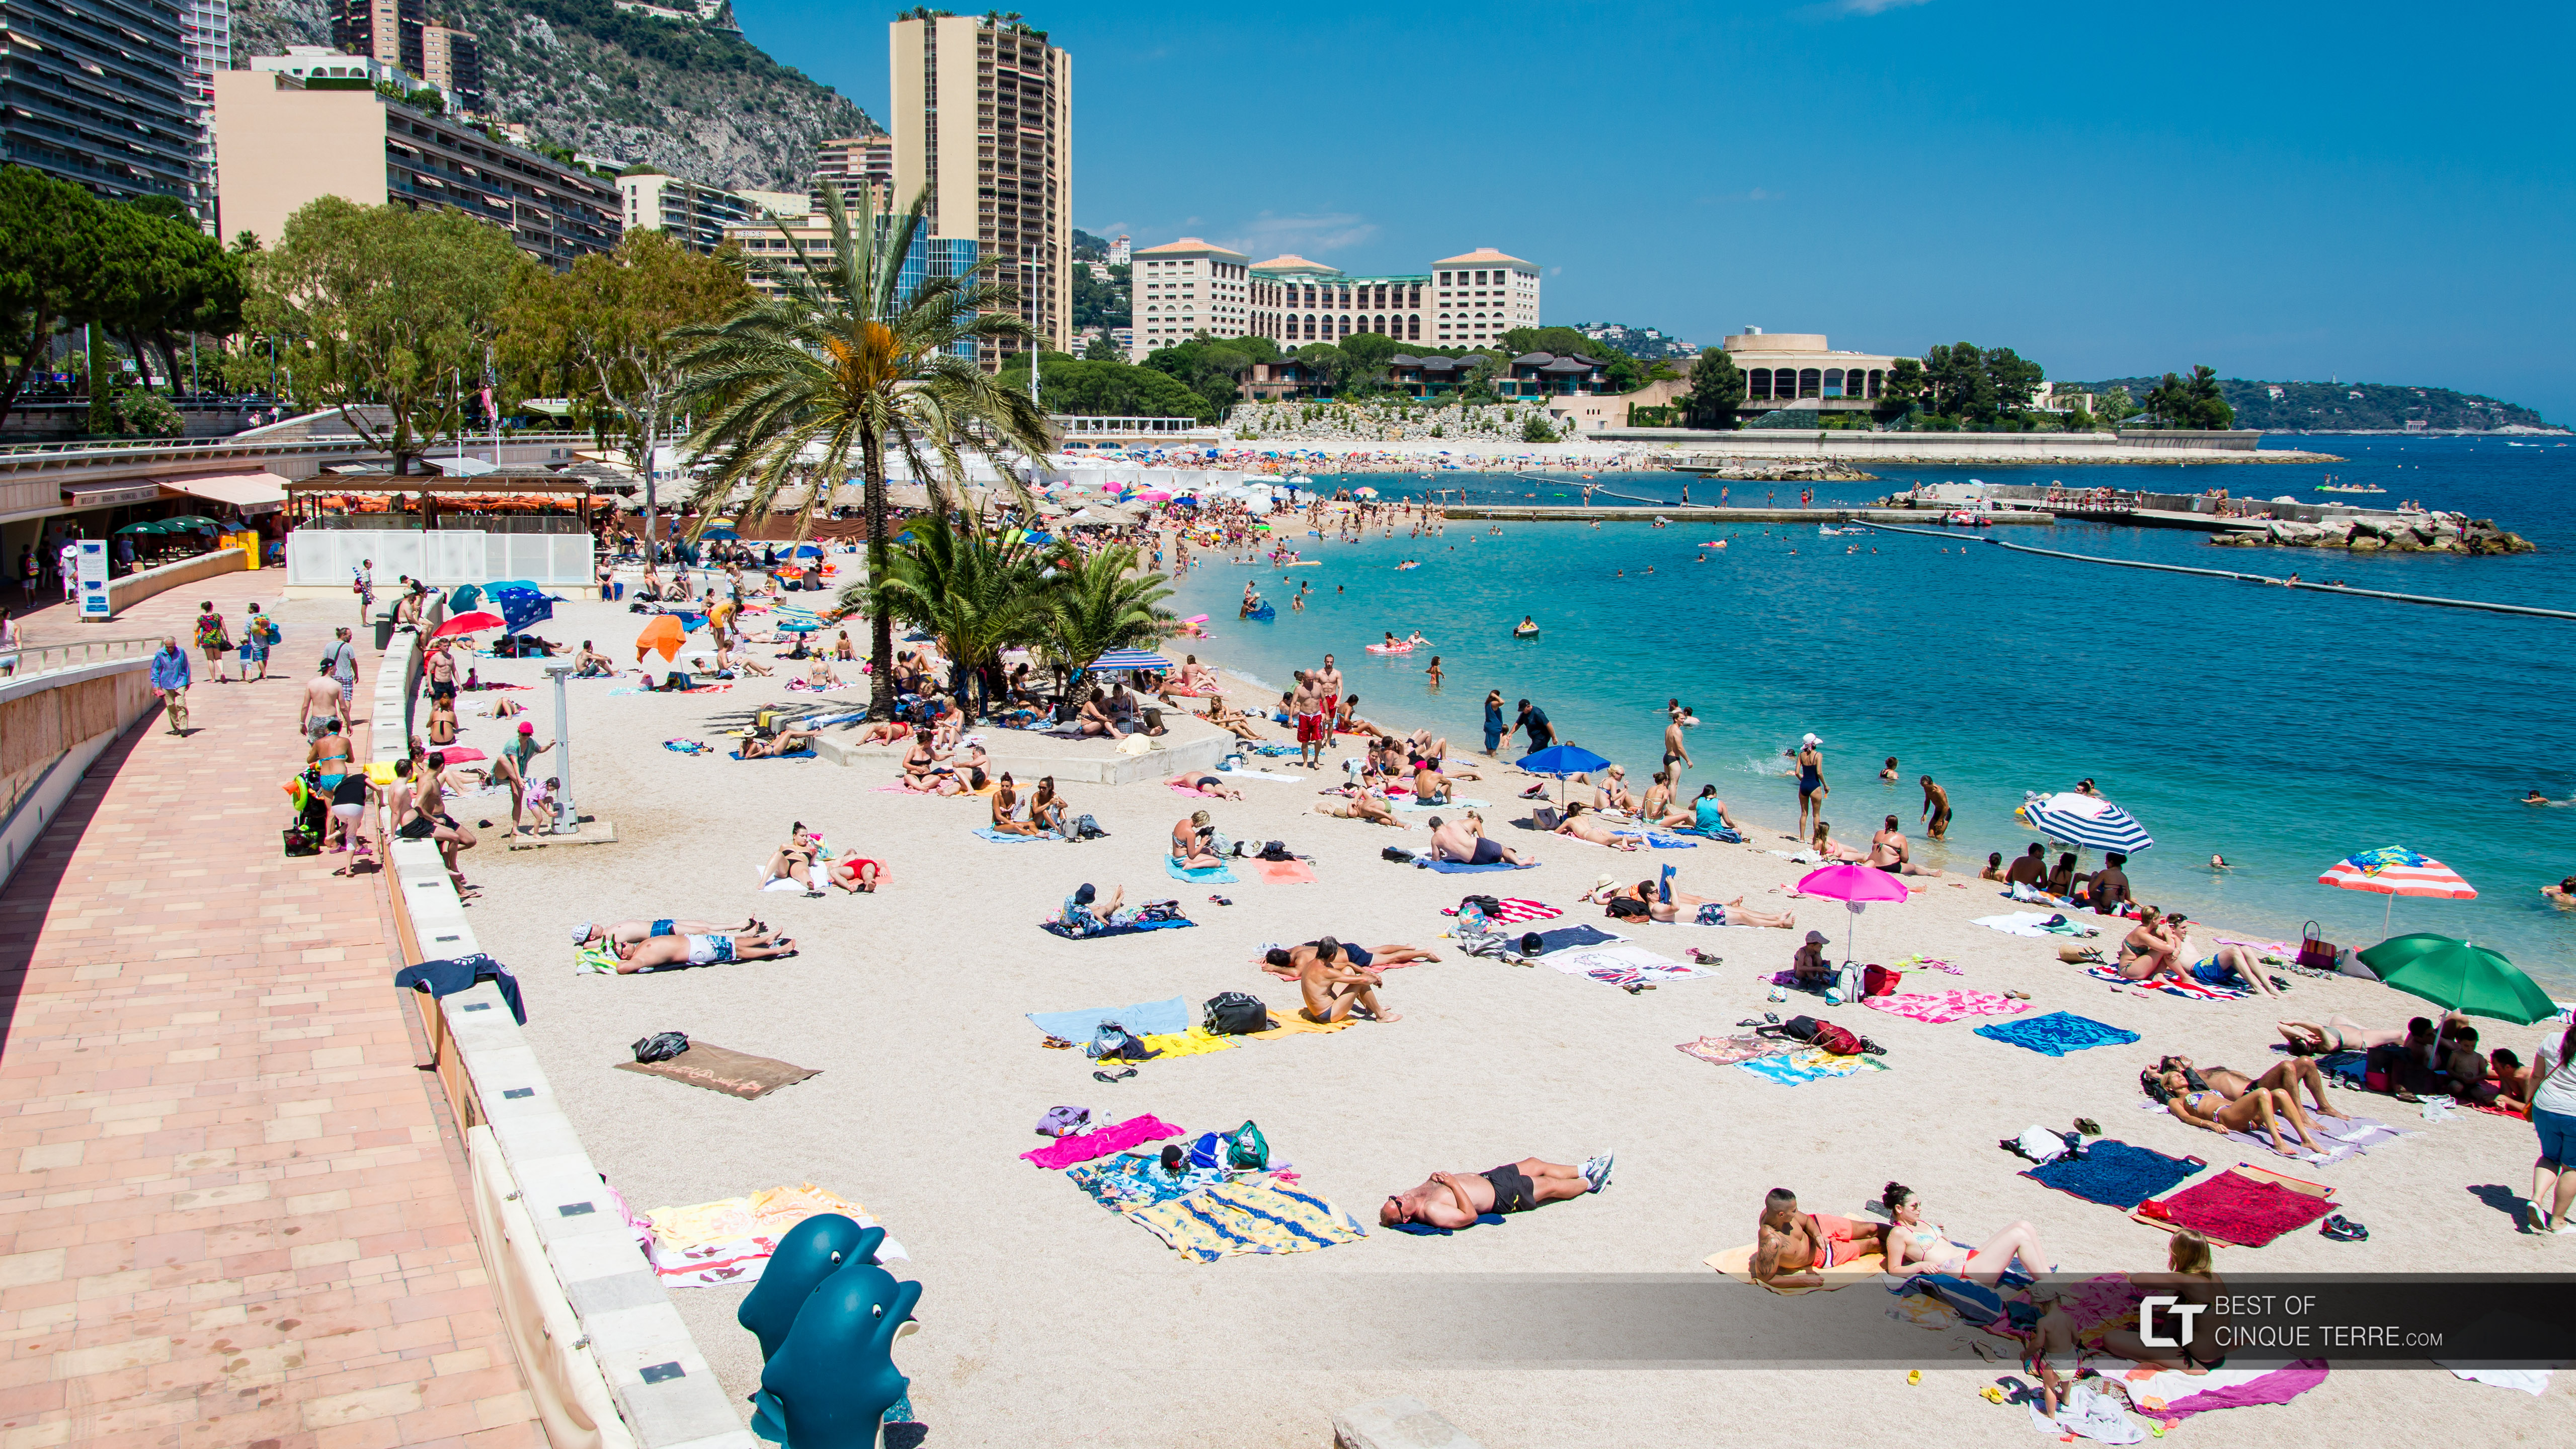 La plage de Larvotto, Monaco